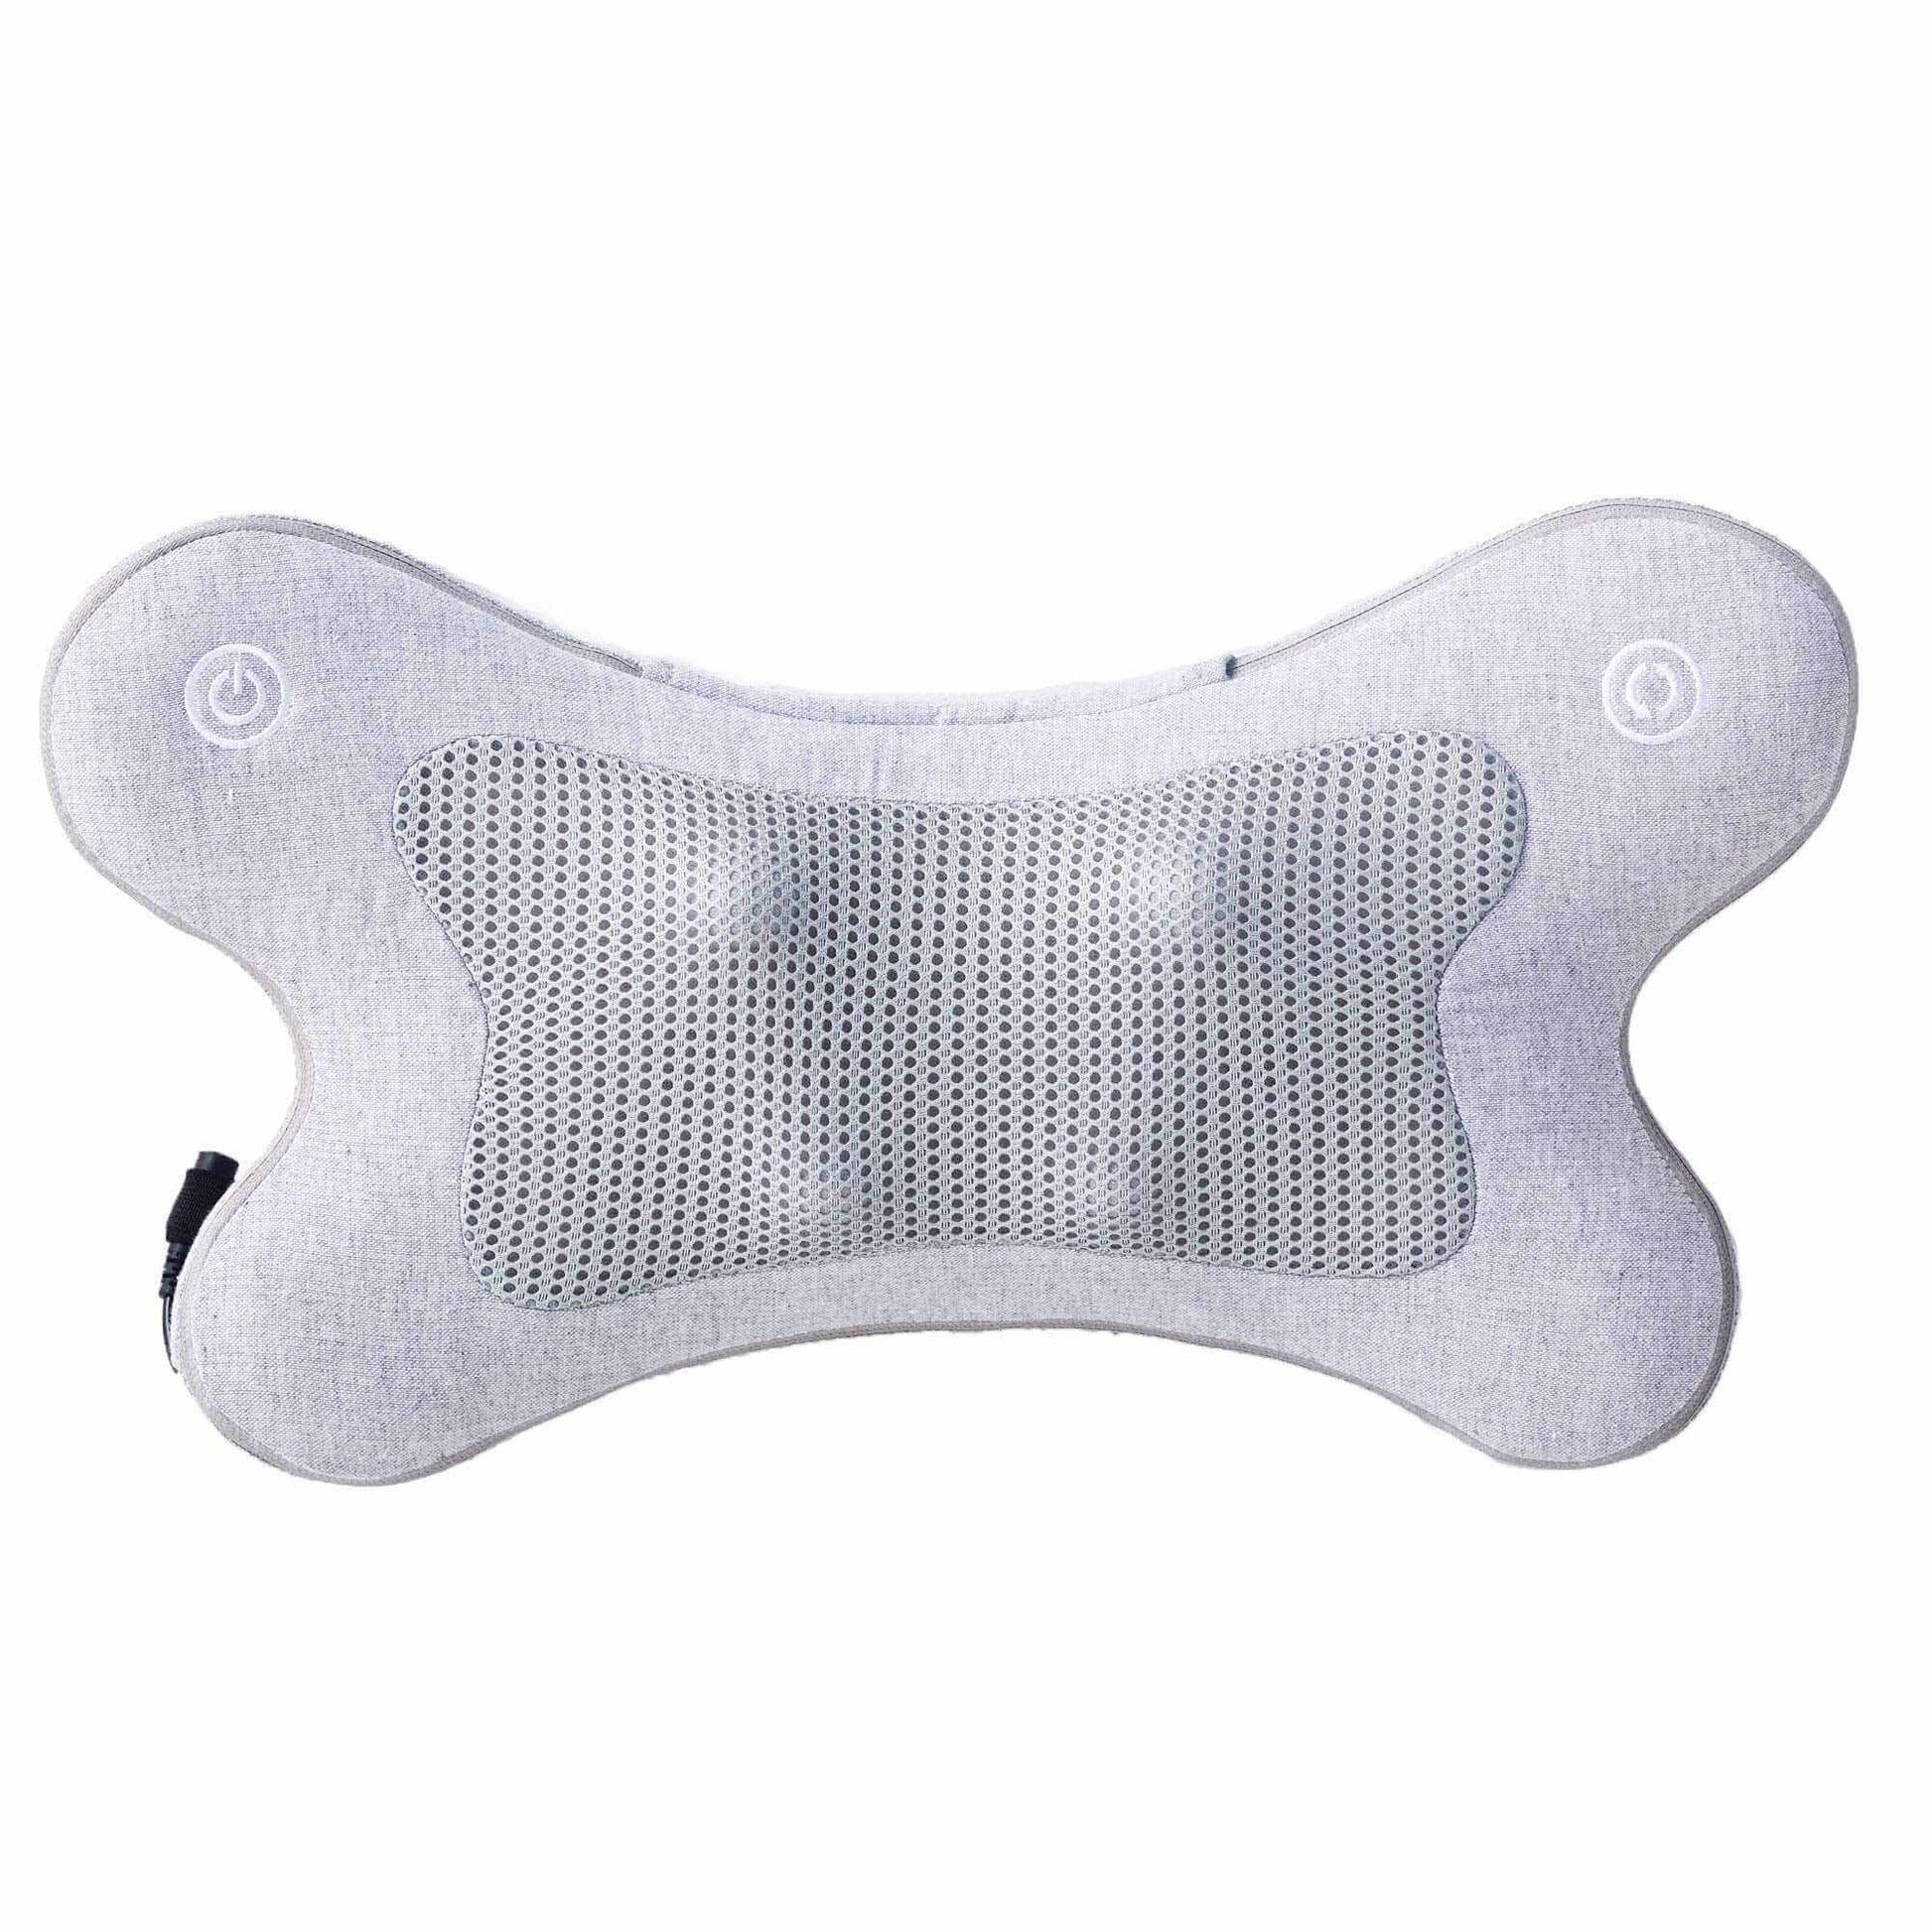 Synca Wellness iPuffy - Premium 3D Heated Lumbar Massager - Electric Massagers